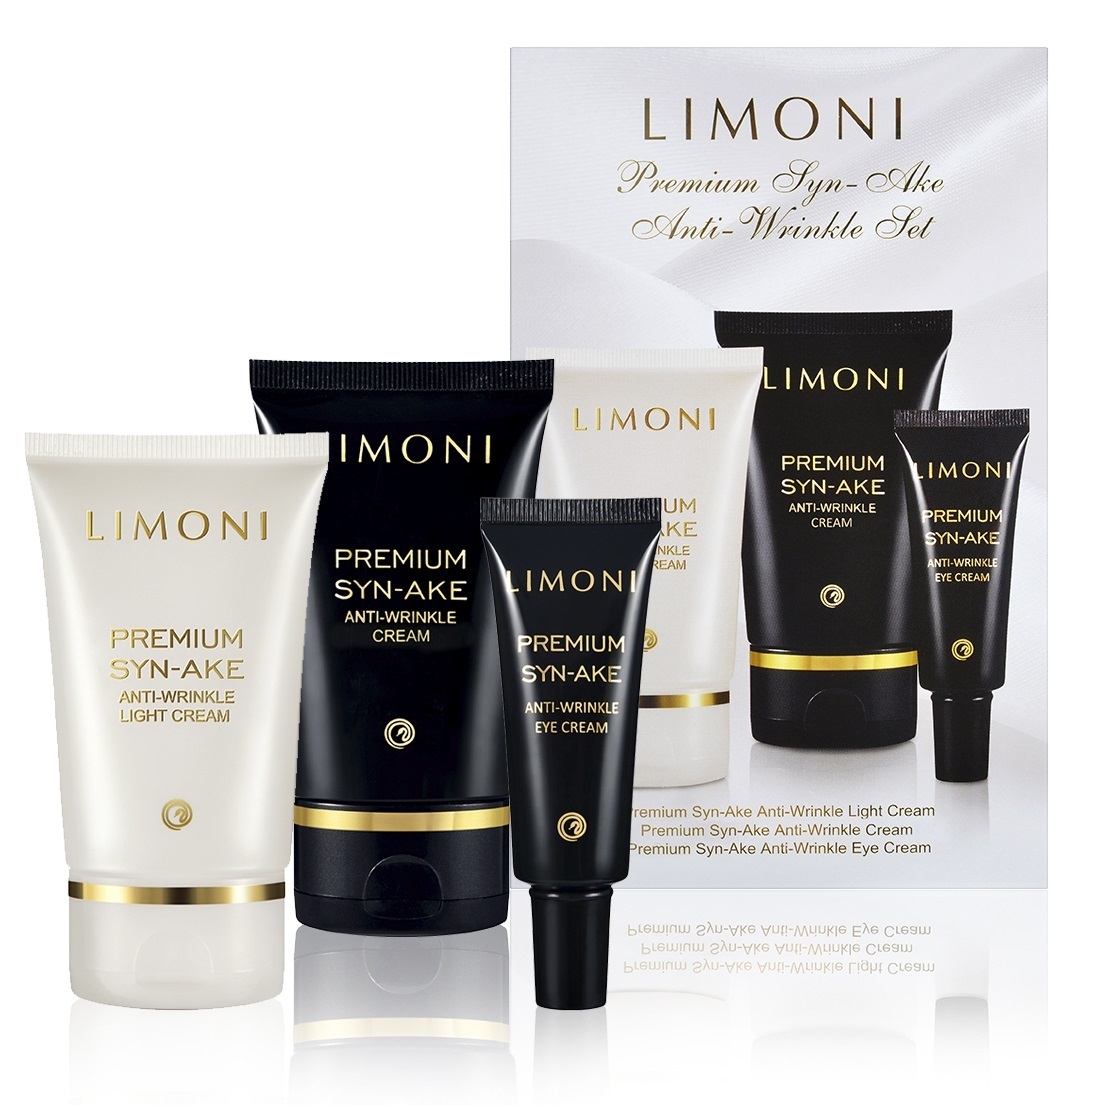 цена Limoni Подарочный набор Premium Syn-Ake Anti-Wrinkle Care Set: крем для лица 2х50 мл + крем для век 25 мл (Limoni, Наборы)